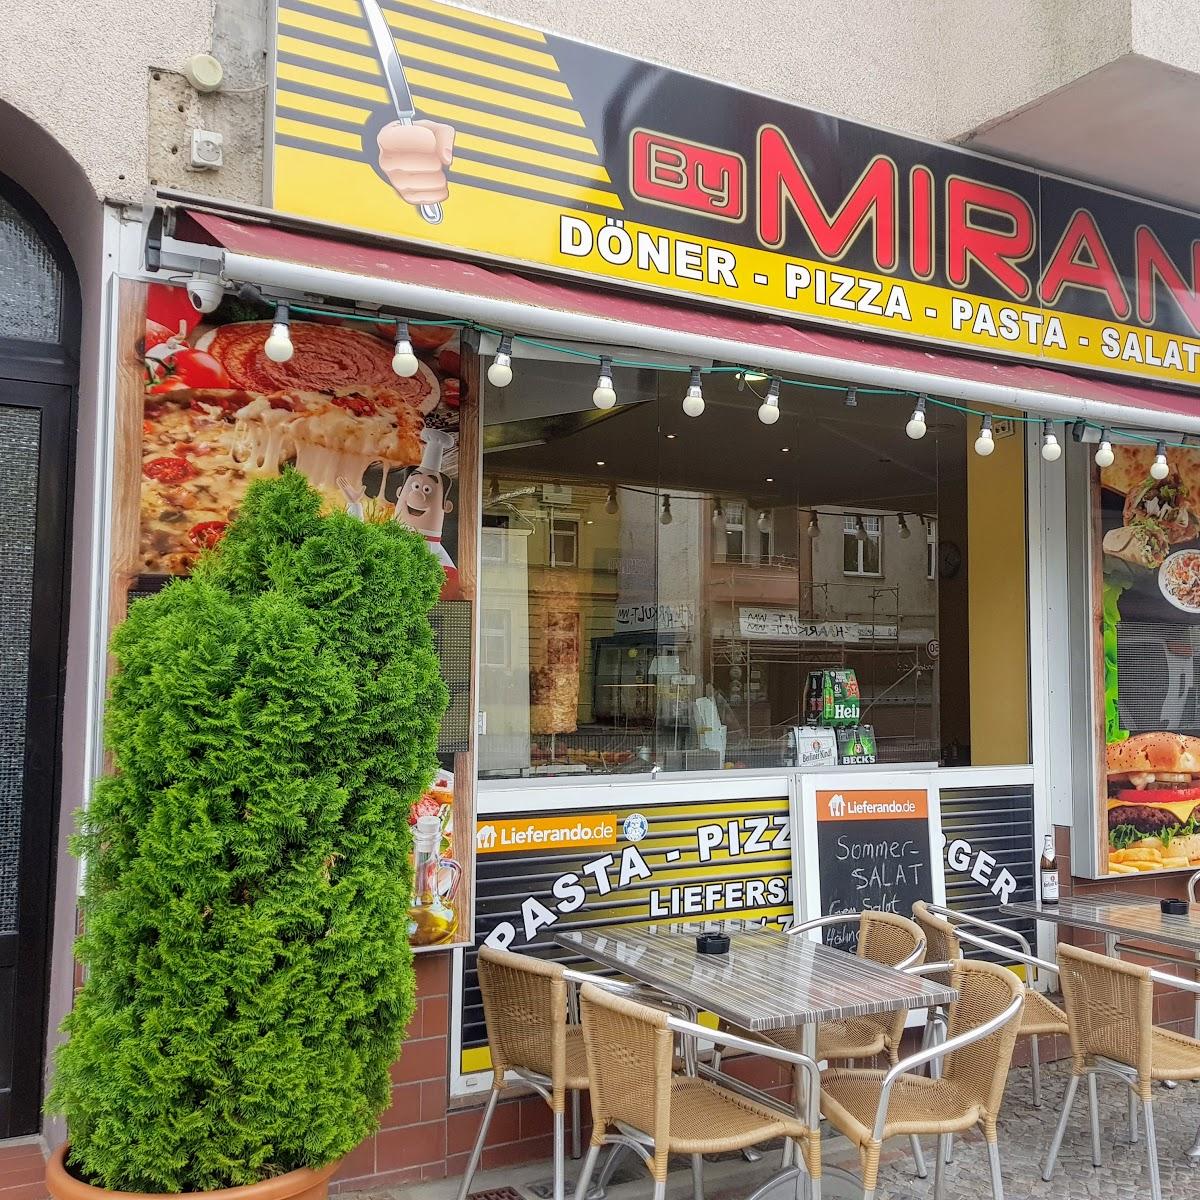 Restaurant "By Miran